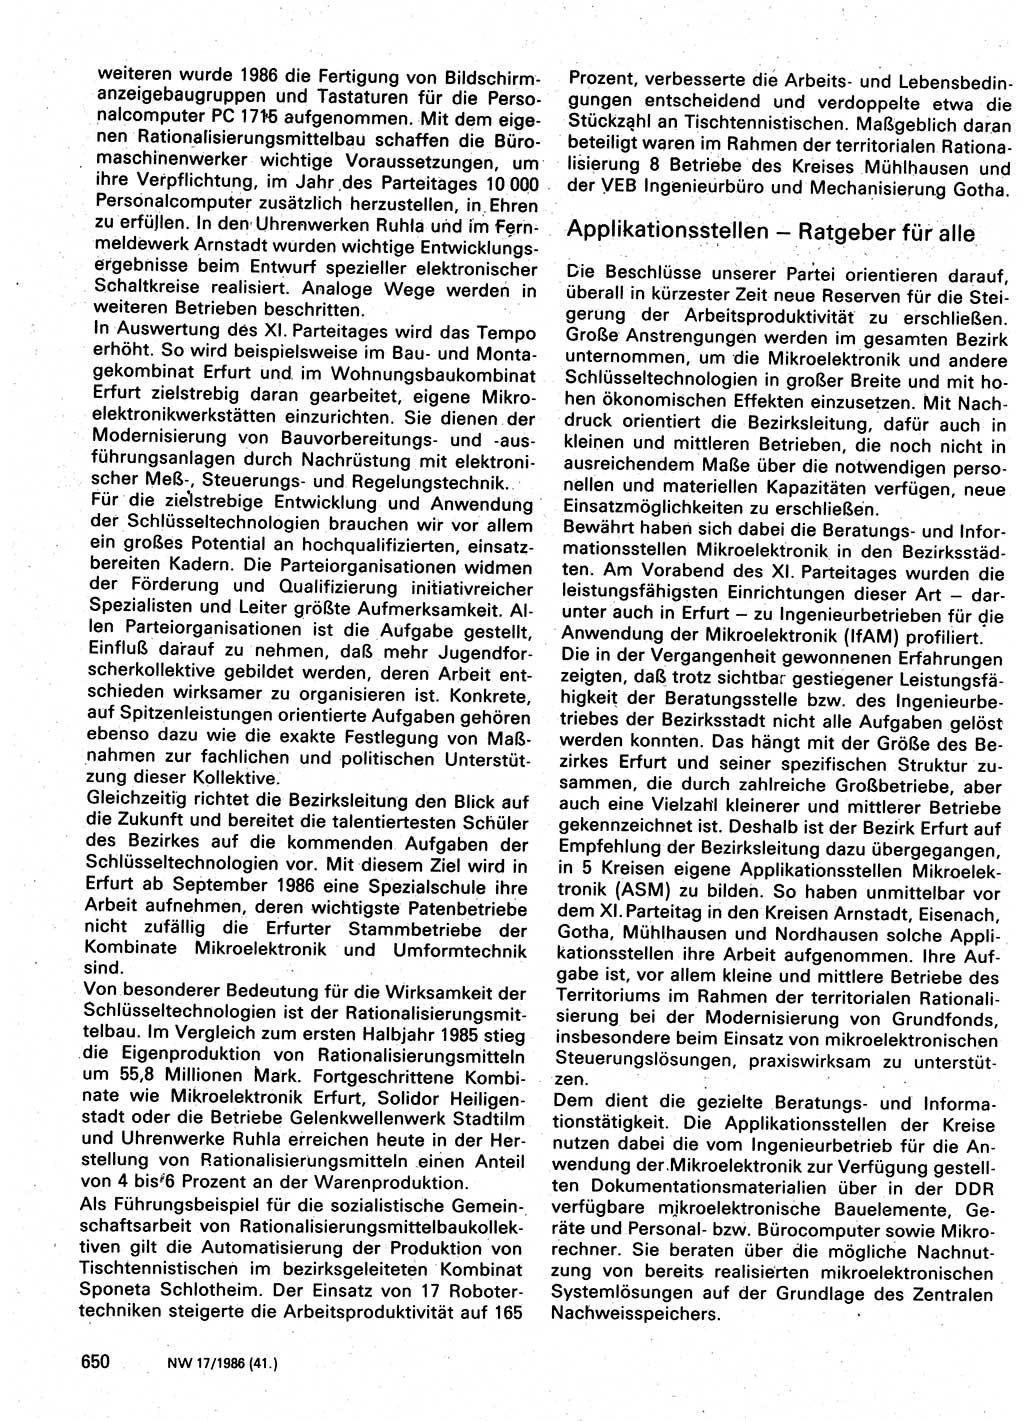 Neuer Weg (NW), Organ des Zentralkomitees (ZK) der SED (Sozialistische Einheitspartei Deutschlands) für Fragen des Parteilebens, 41. Jahrgang [Deutsche Demokratische Republik (DDR)] 1986, Seite 650 (NW ZK SED DDR 1986, S. 650)